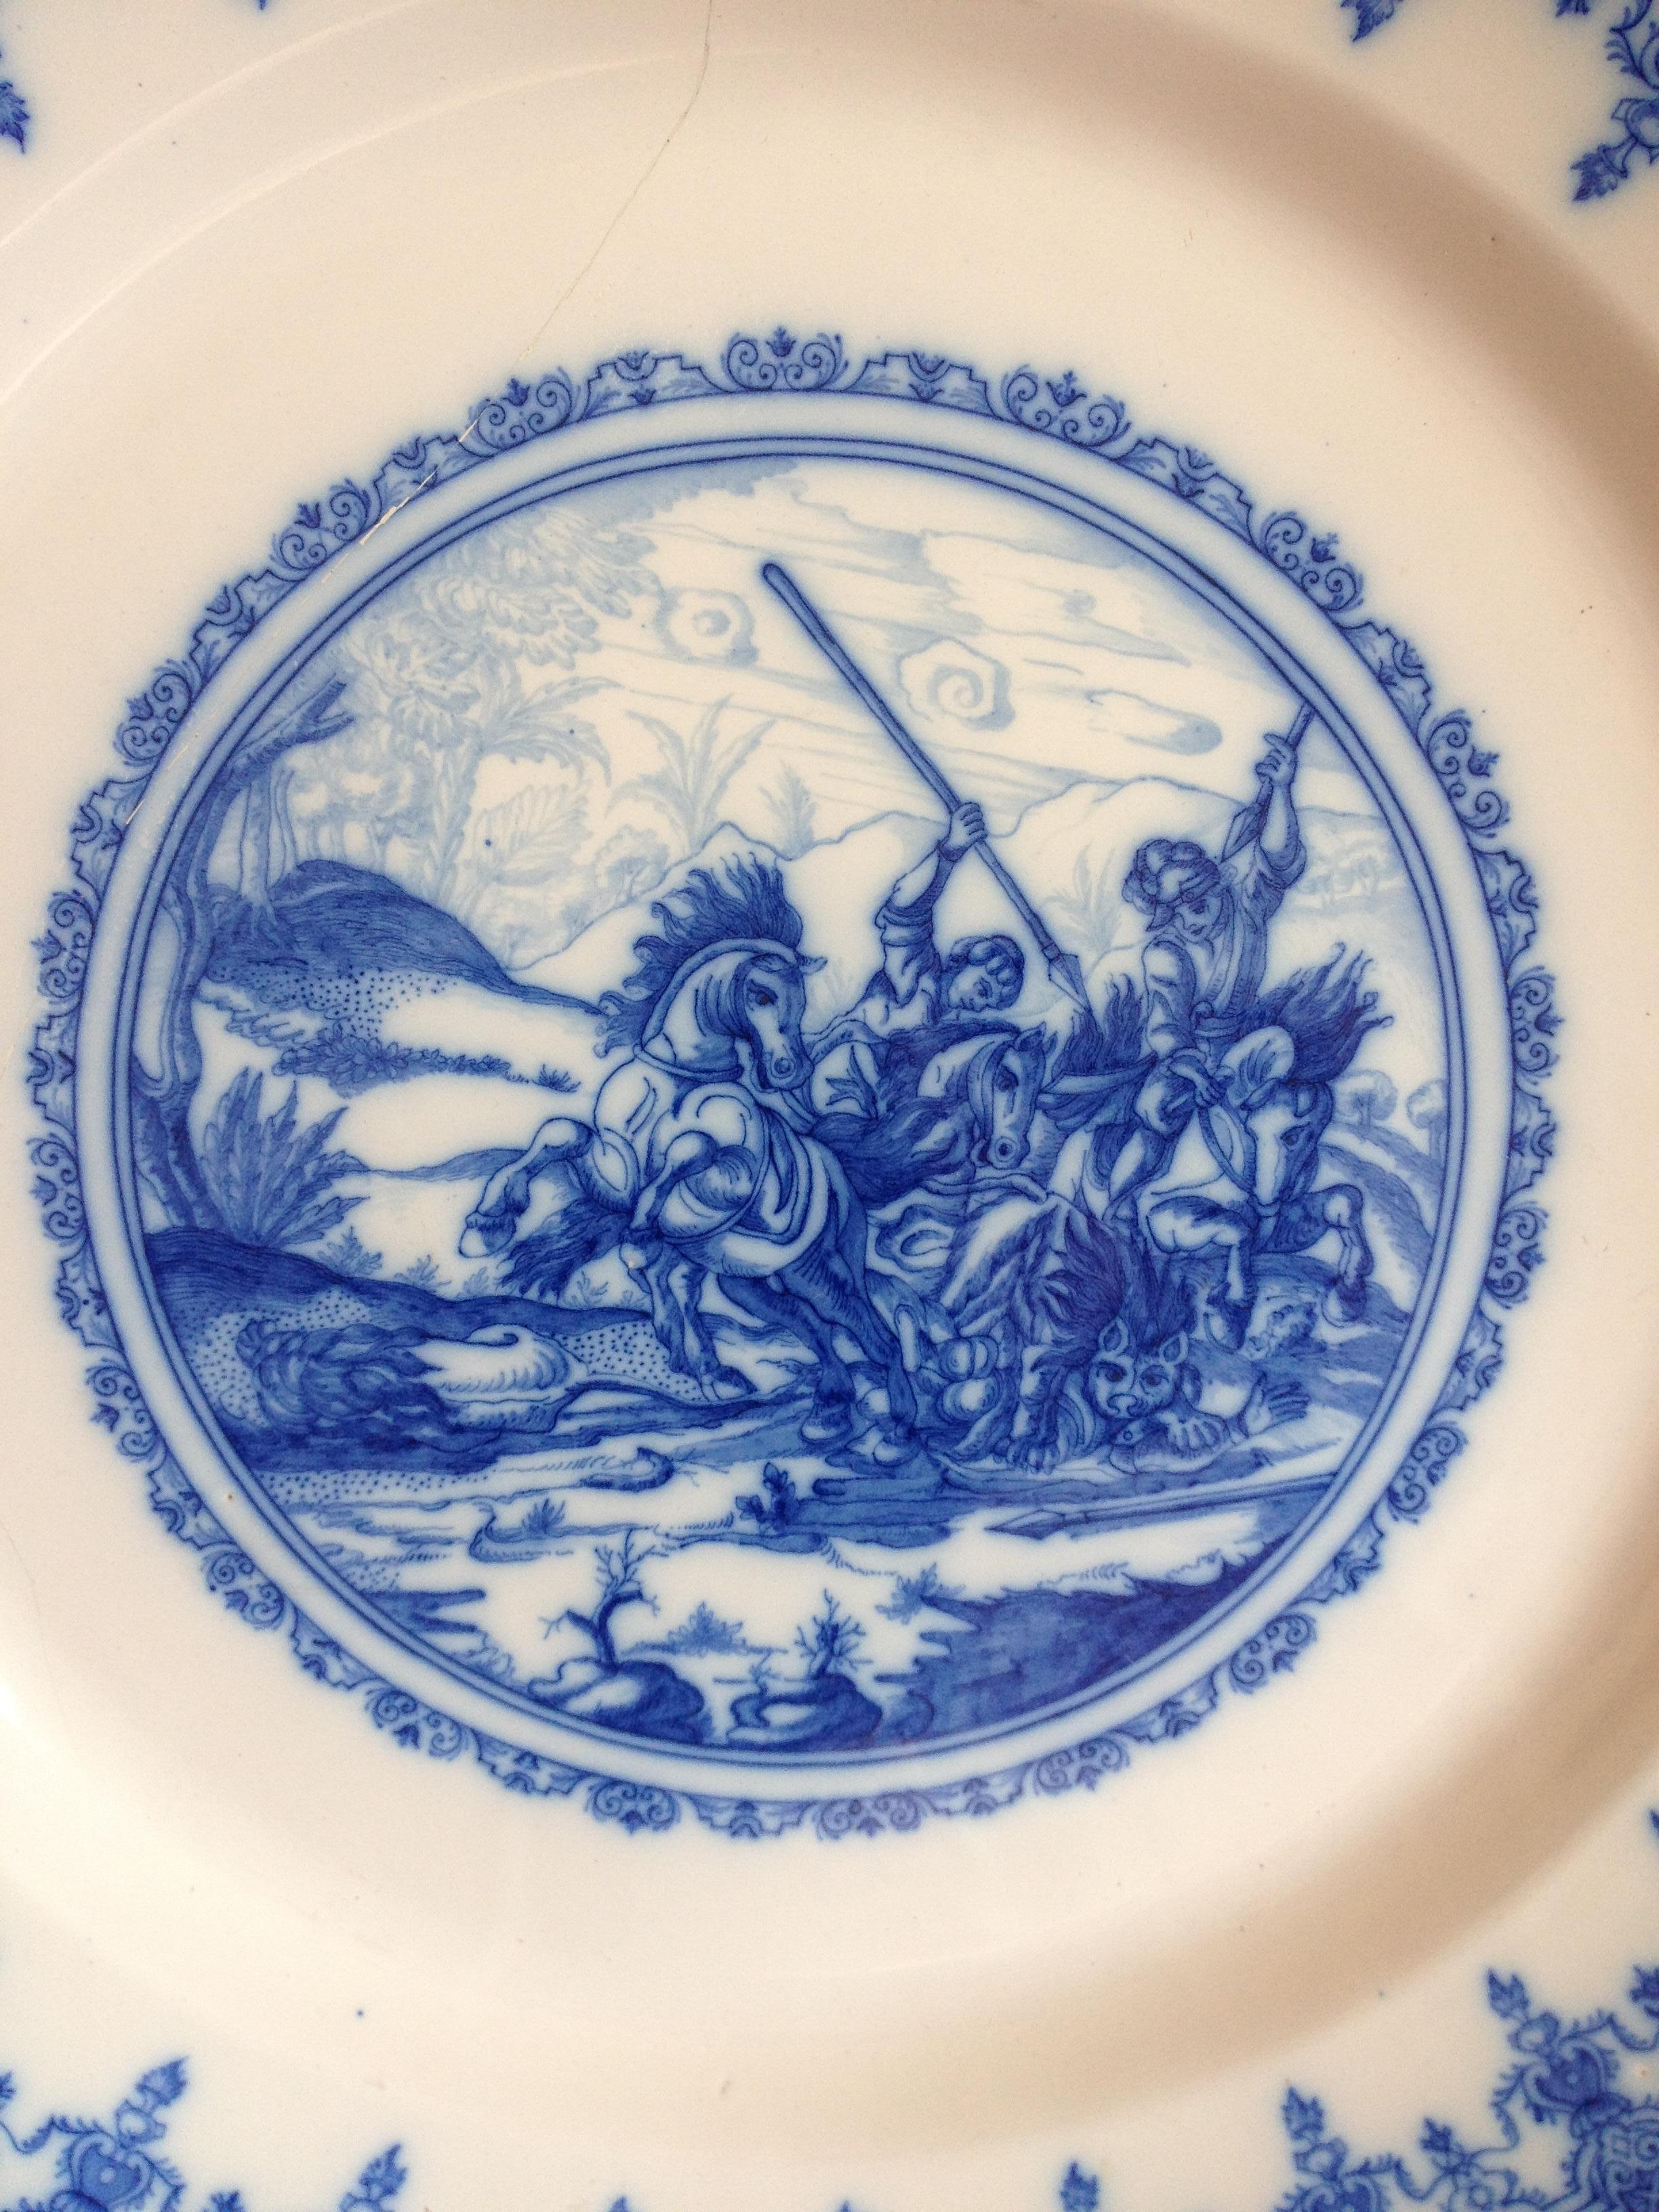 Assiette décorative de style Delft ou chargeur de style Chinoiserie en bleu et blanc du 18e siècle. 

Cette belle assiette ancienne est en faïence de Moustier (France), peinte à la main, décorée en camaïeu bleu, dans une réserve circulaire composée